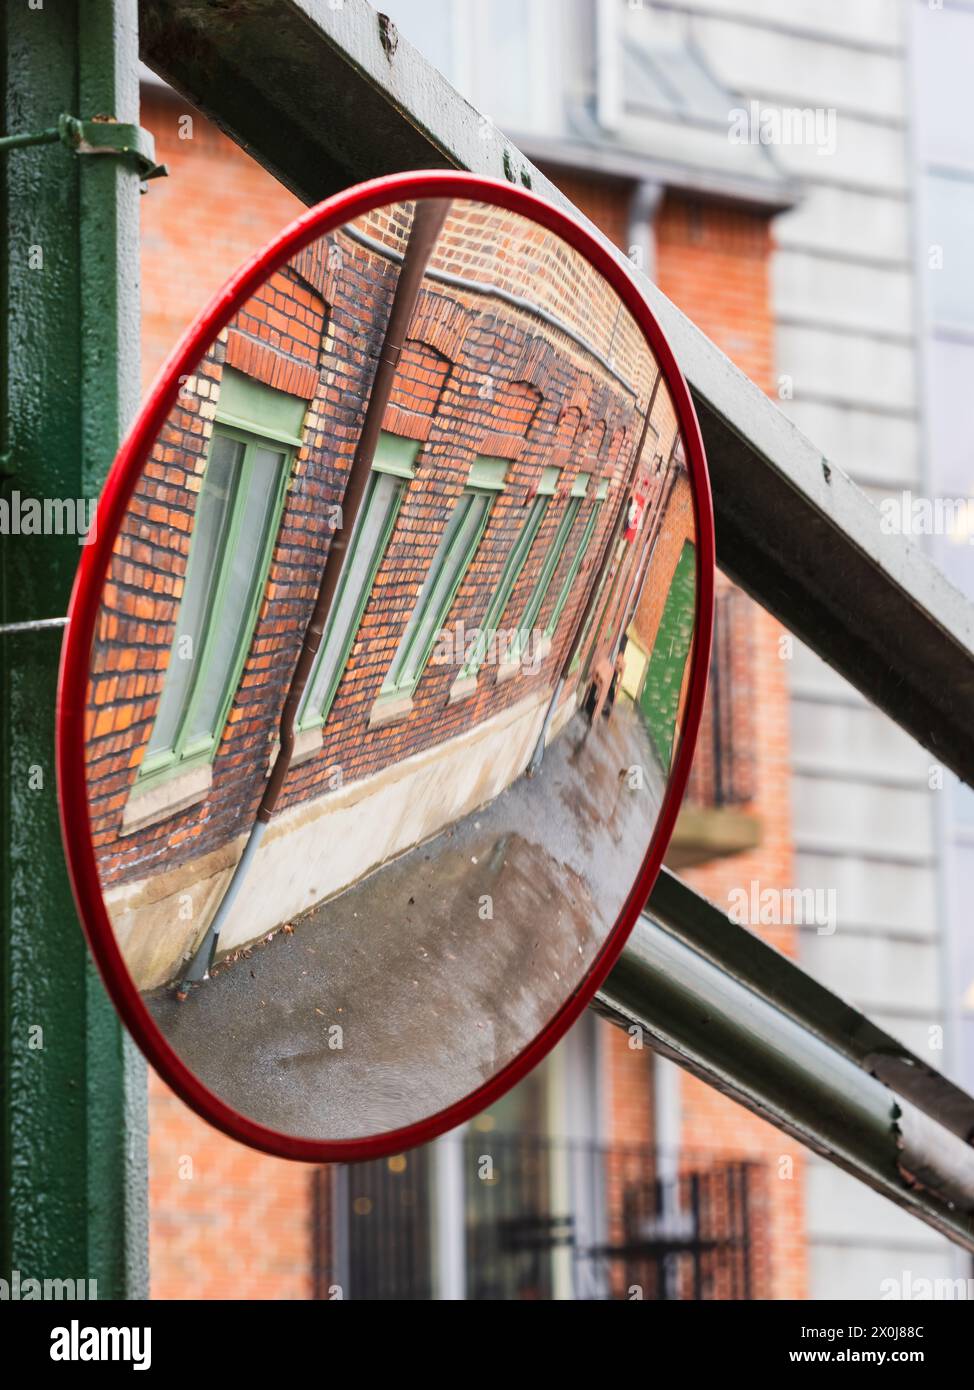 Uno specchio posto su una strada trafficata a Gothenburg, Svezia, riflette l'immagine di una facciata moderna di un edificio. Lo specchio cattura i dettagli architettonici Foto Stock